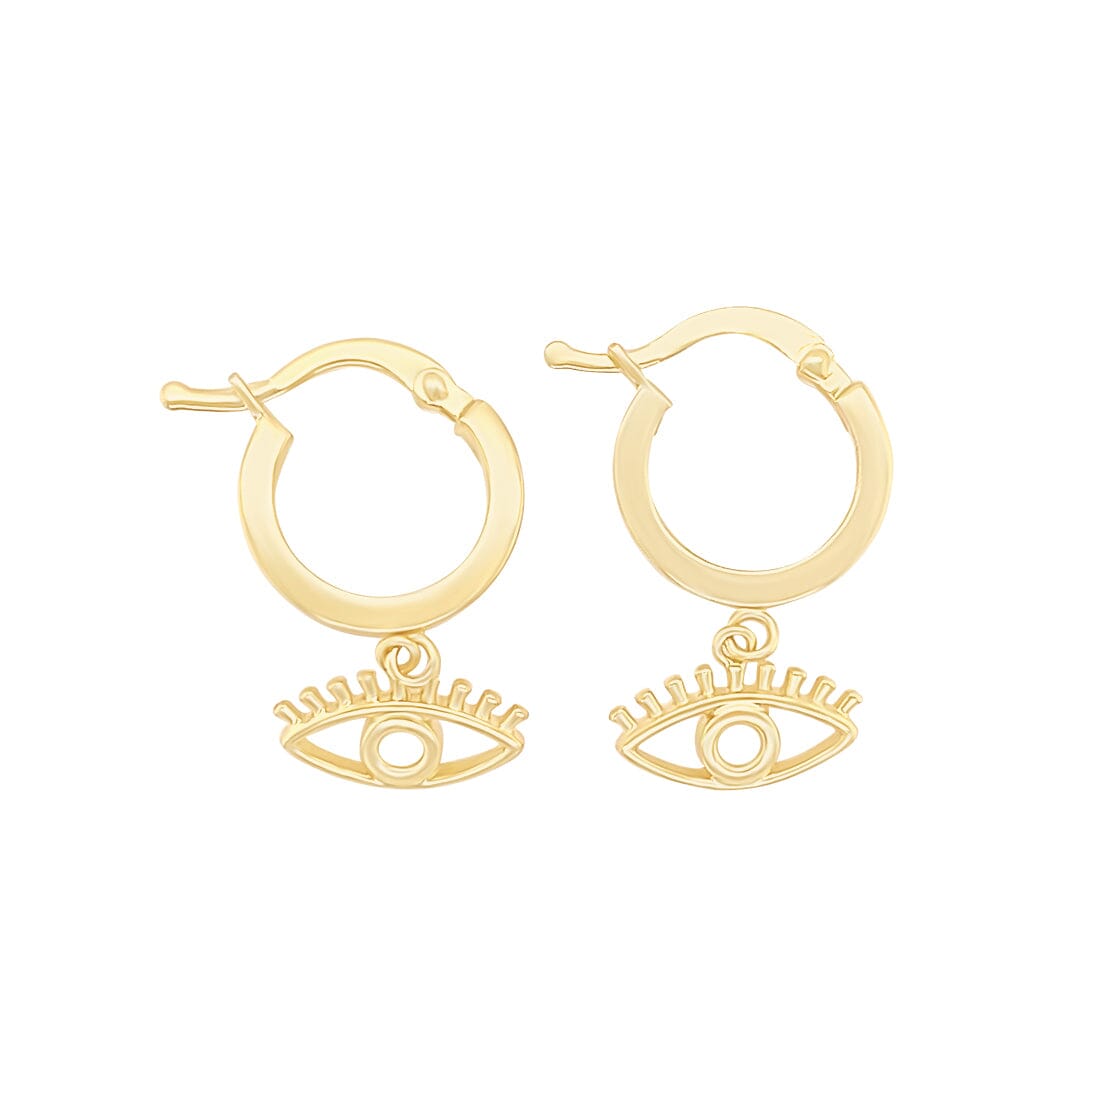 Evil Eye Hoop Earrings in 9ct Yellow Gold Silver Infused Earrings Bevilles 